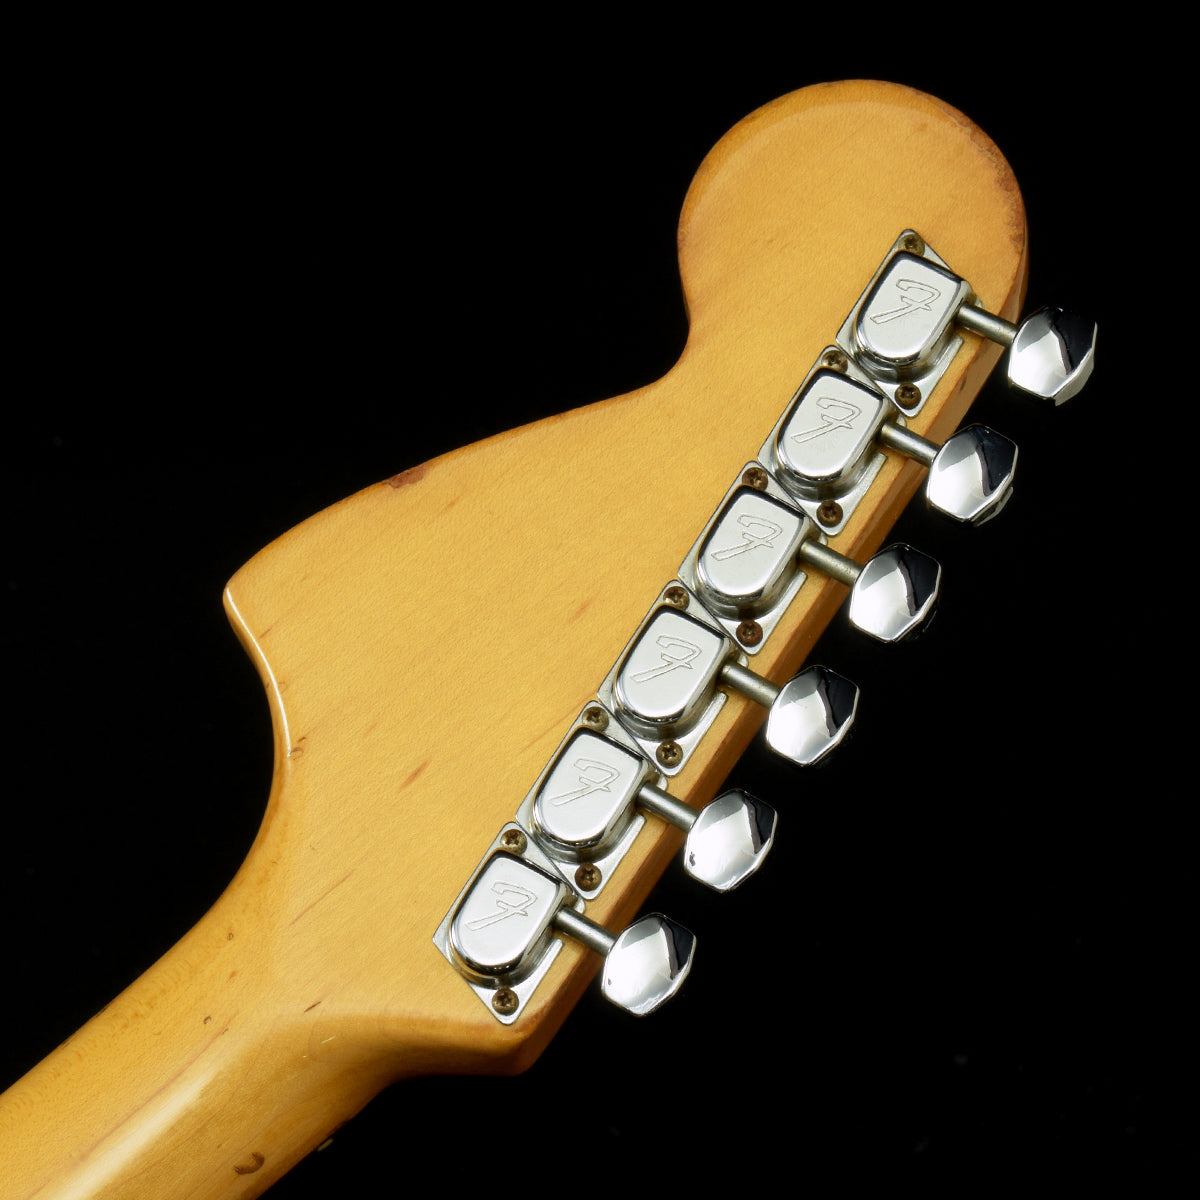 [SN S821782] USED Fender USA Fender / 1978-1980 Mustang White [20]